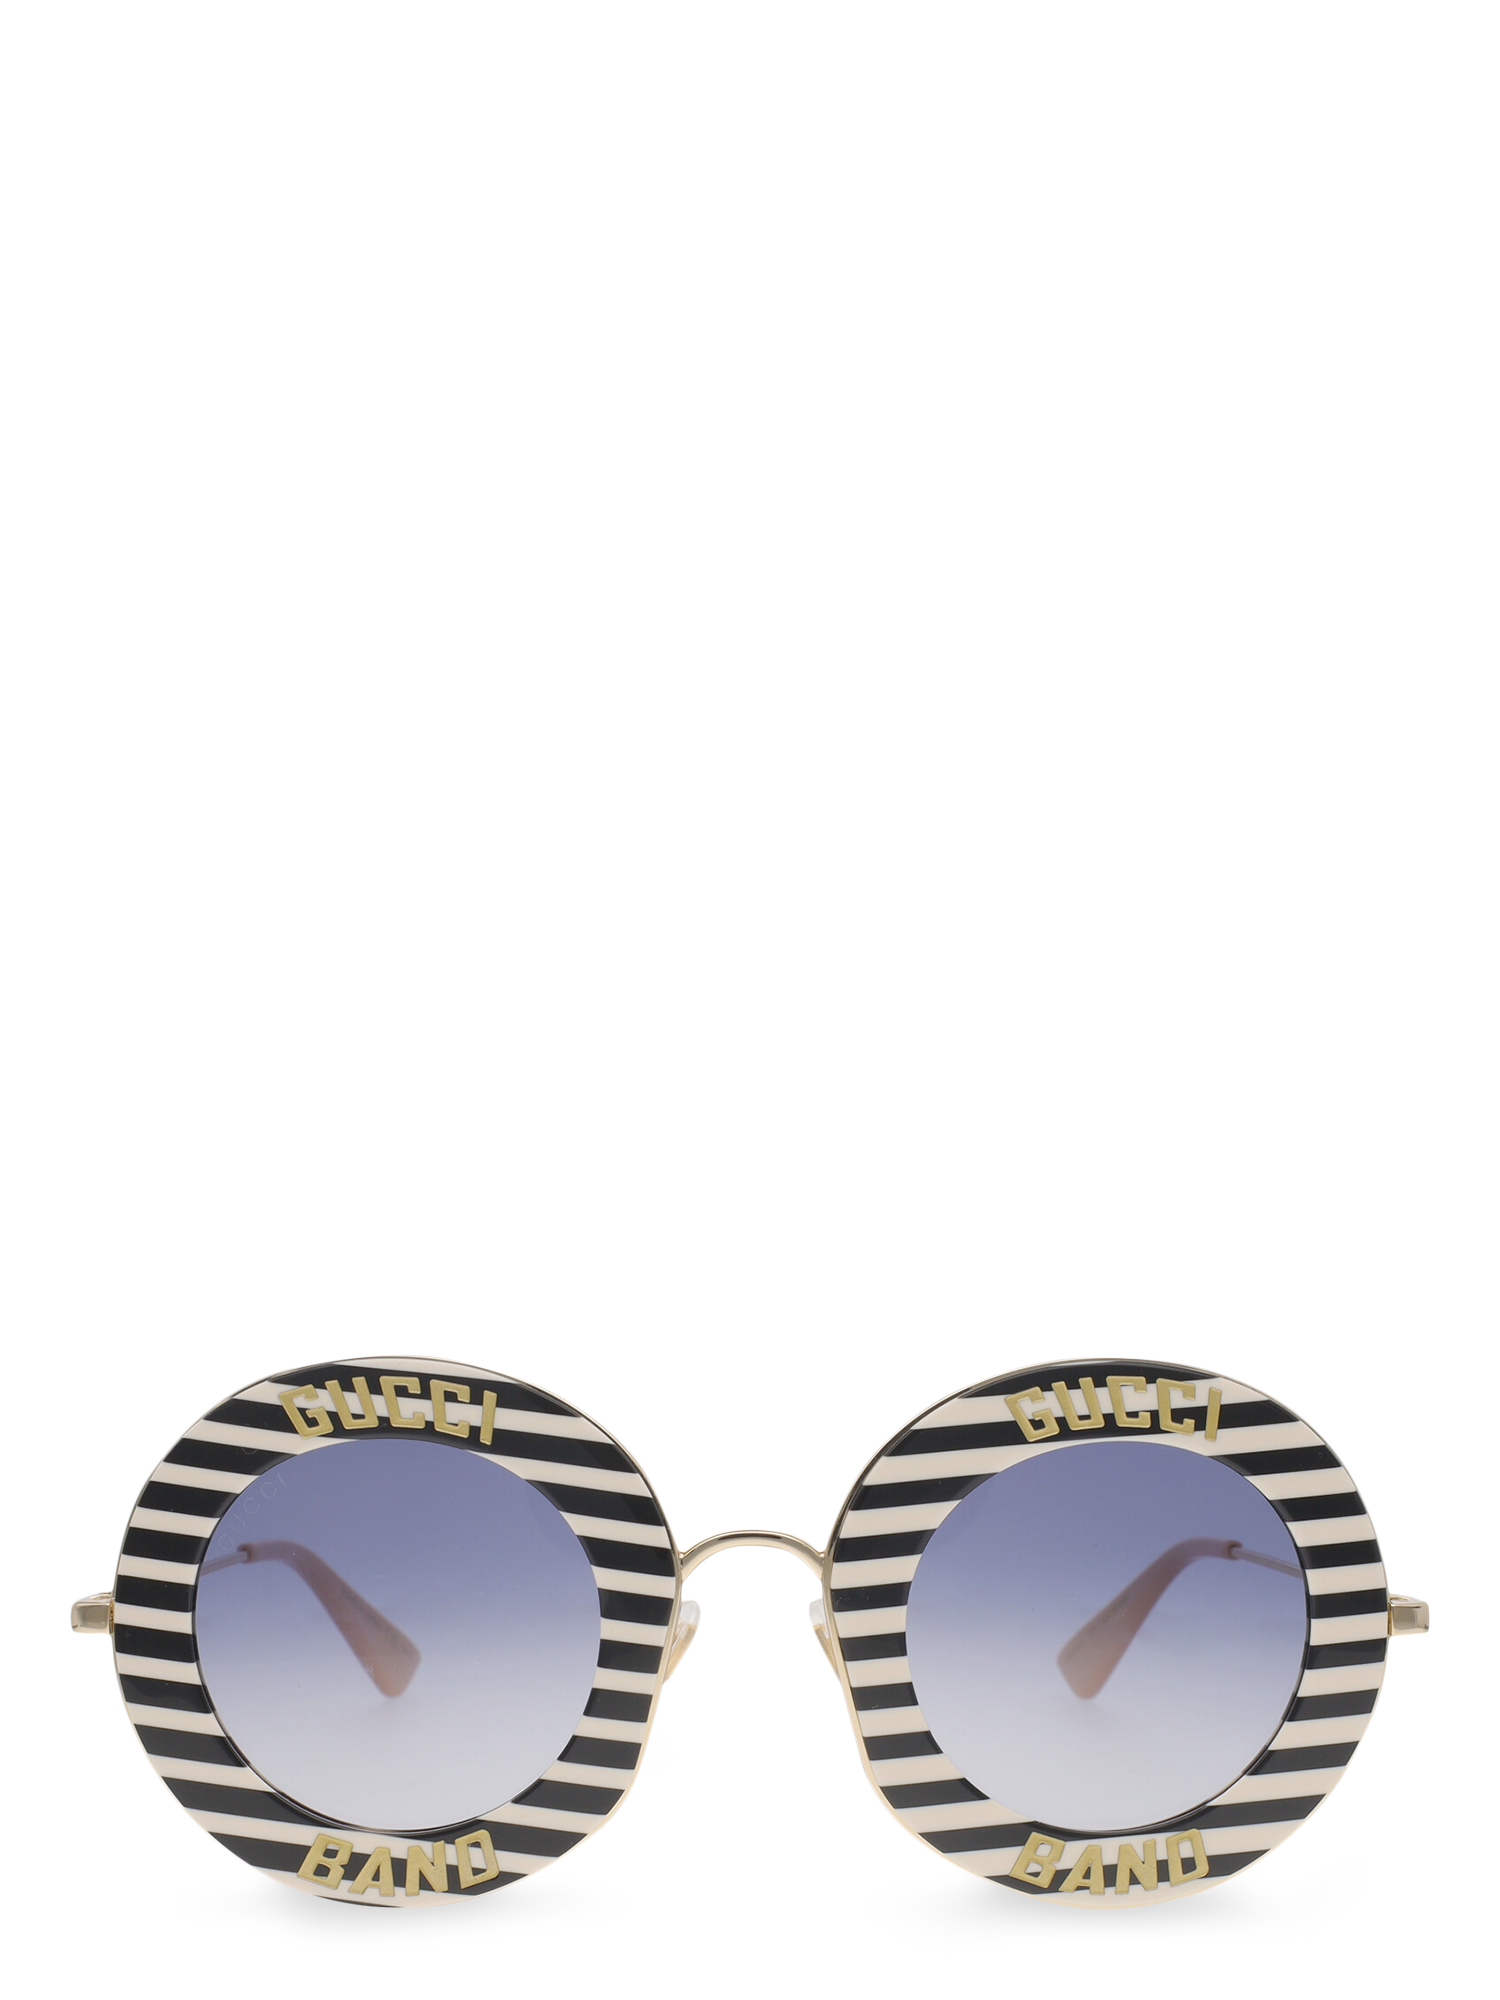 Pre-owned Gucci Women's Sunglasses -  In Black, White